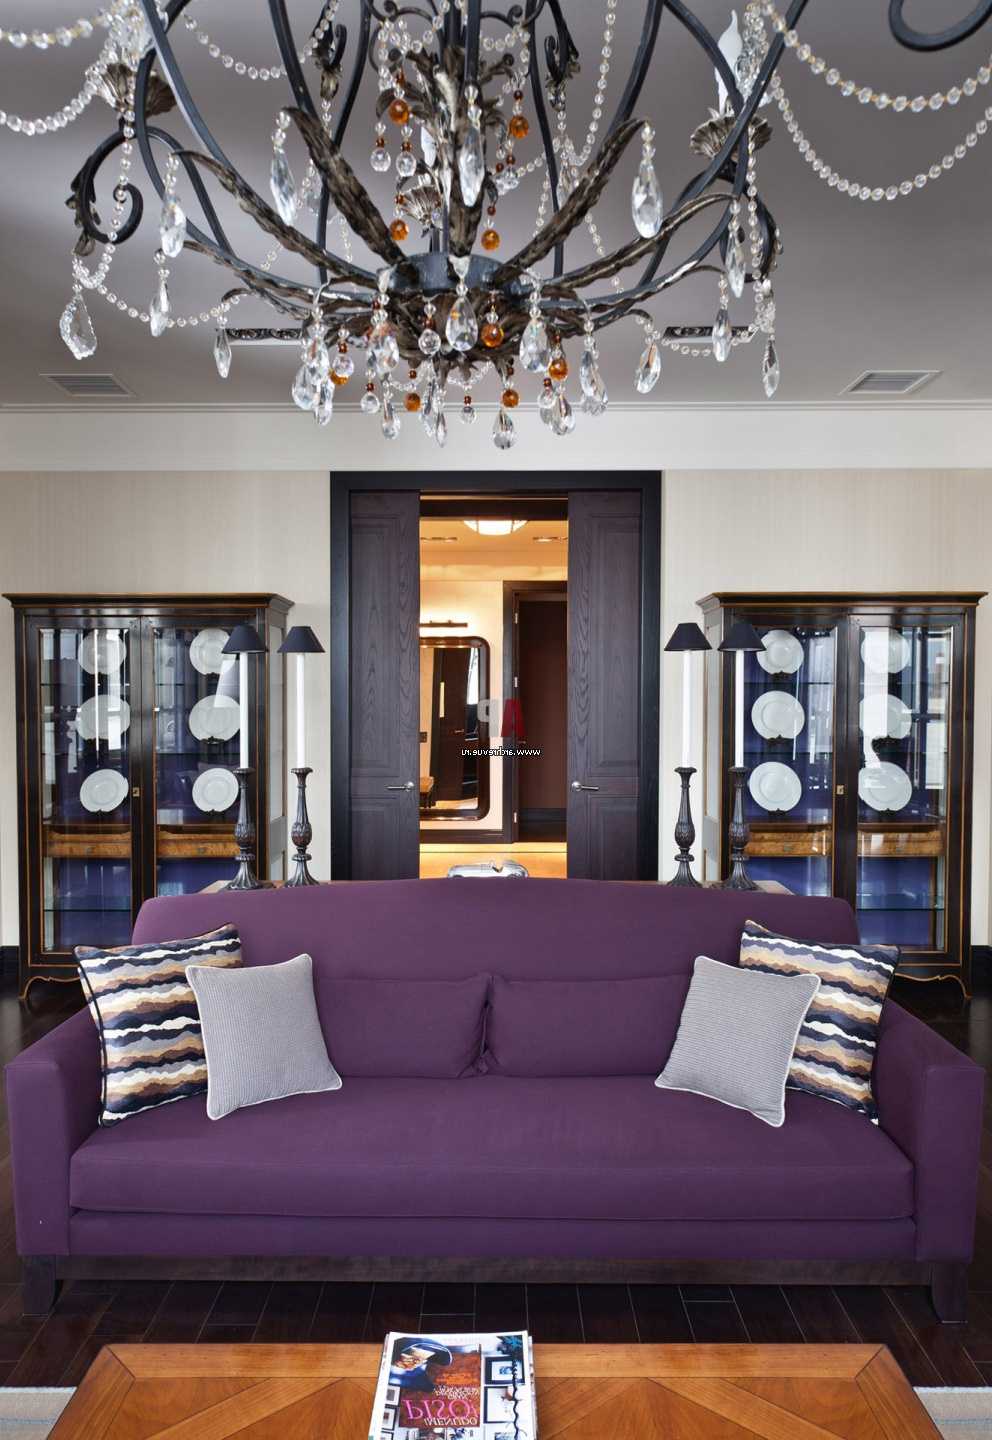 šviesiai violetinė sofa prieškambario dizaine